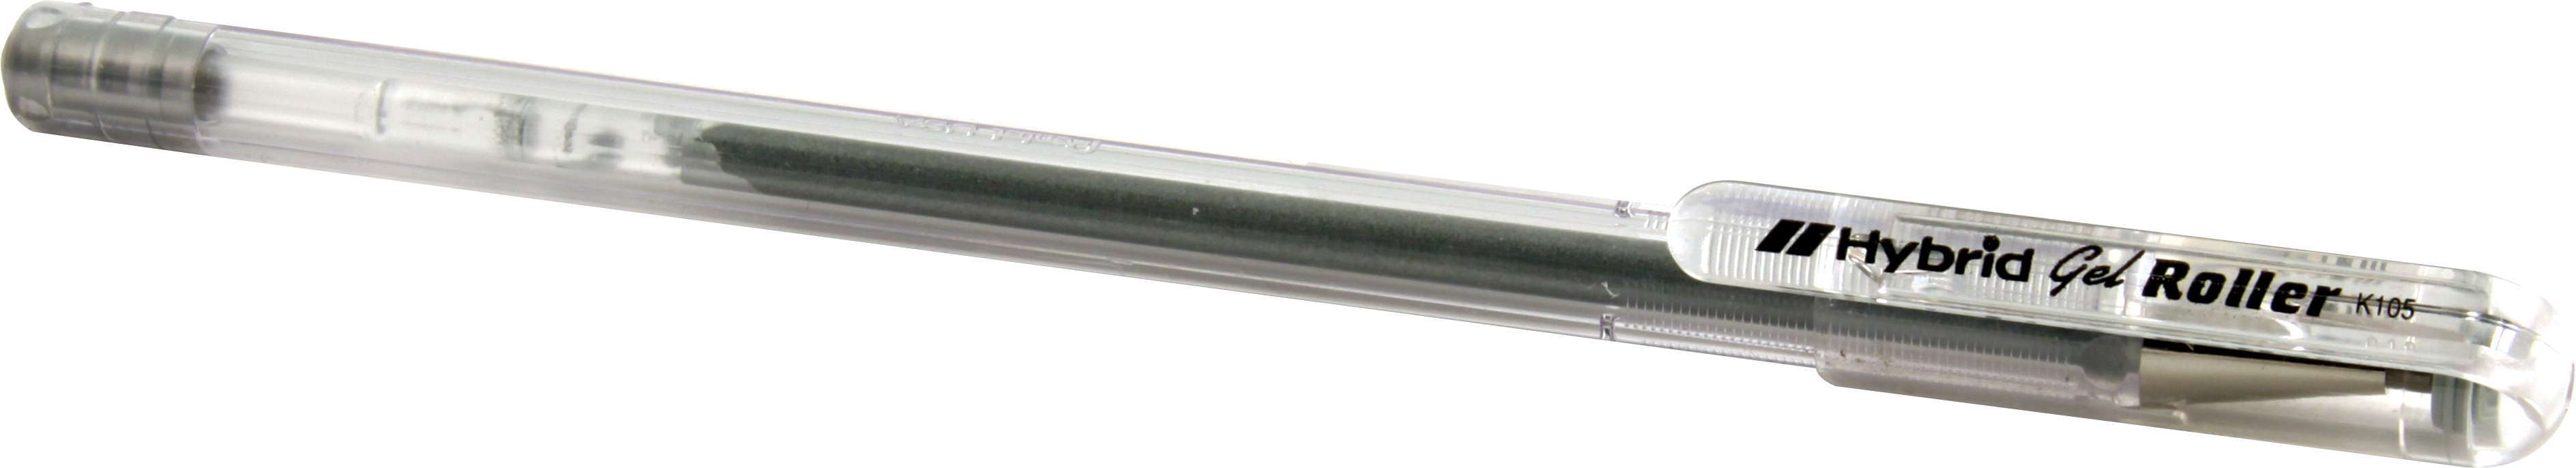 QuickCar 64-403 - Tire Pen, Silver, Each